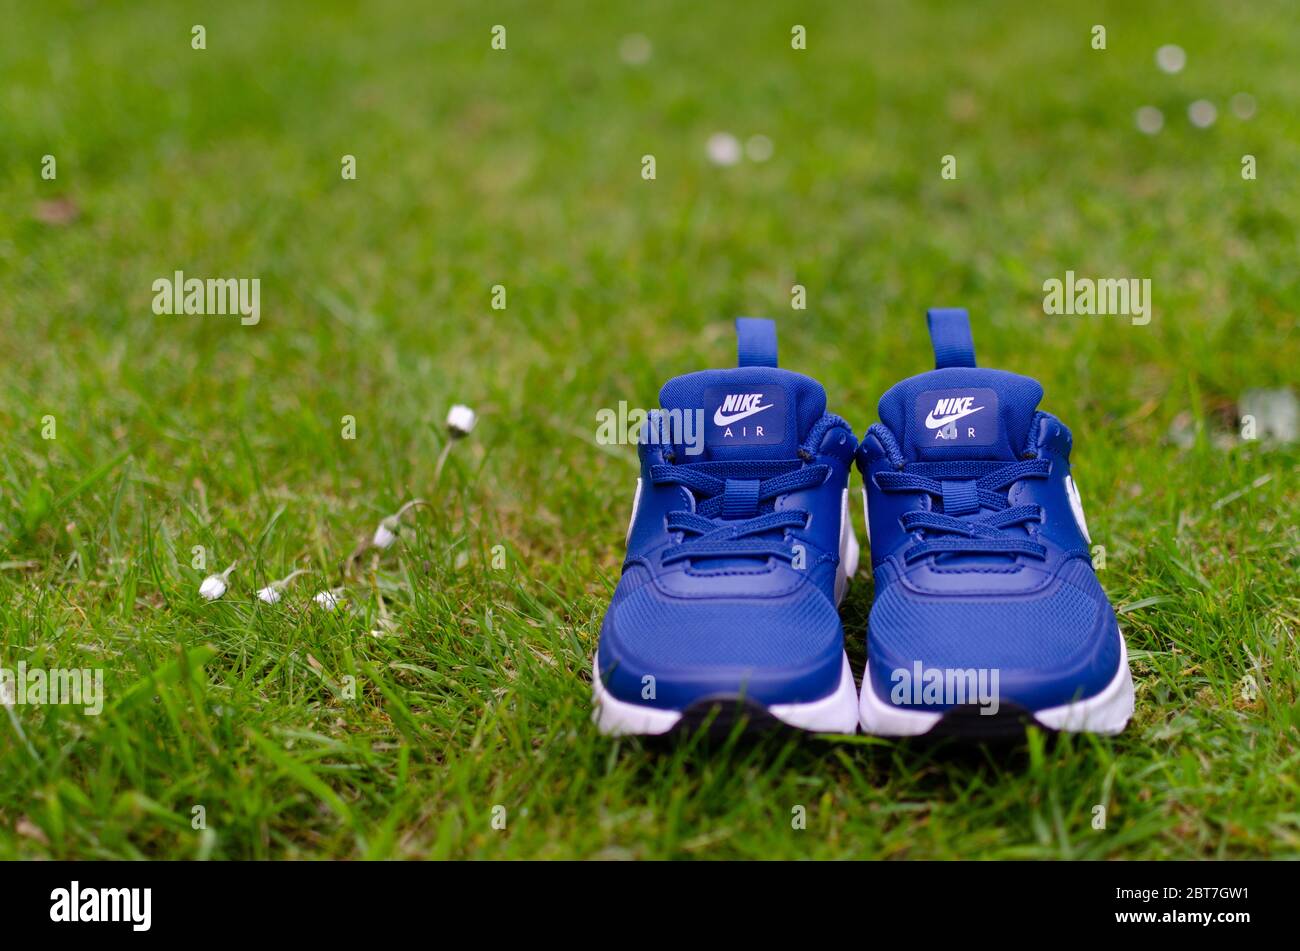 La foto ravvicinata dell'paio di scarpe Nike Air blu per bambini sull'erba verde vibrante. Per l'imaging è stato utilizzato un campo visivo poco profondo. Foto Stock